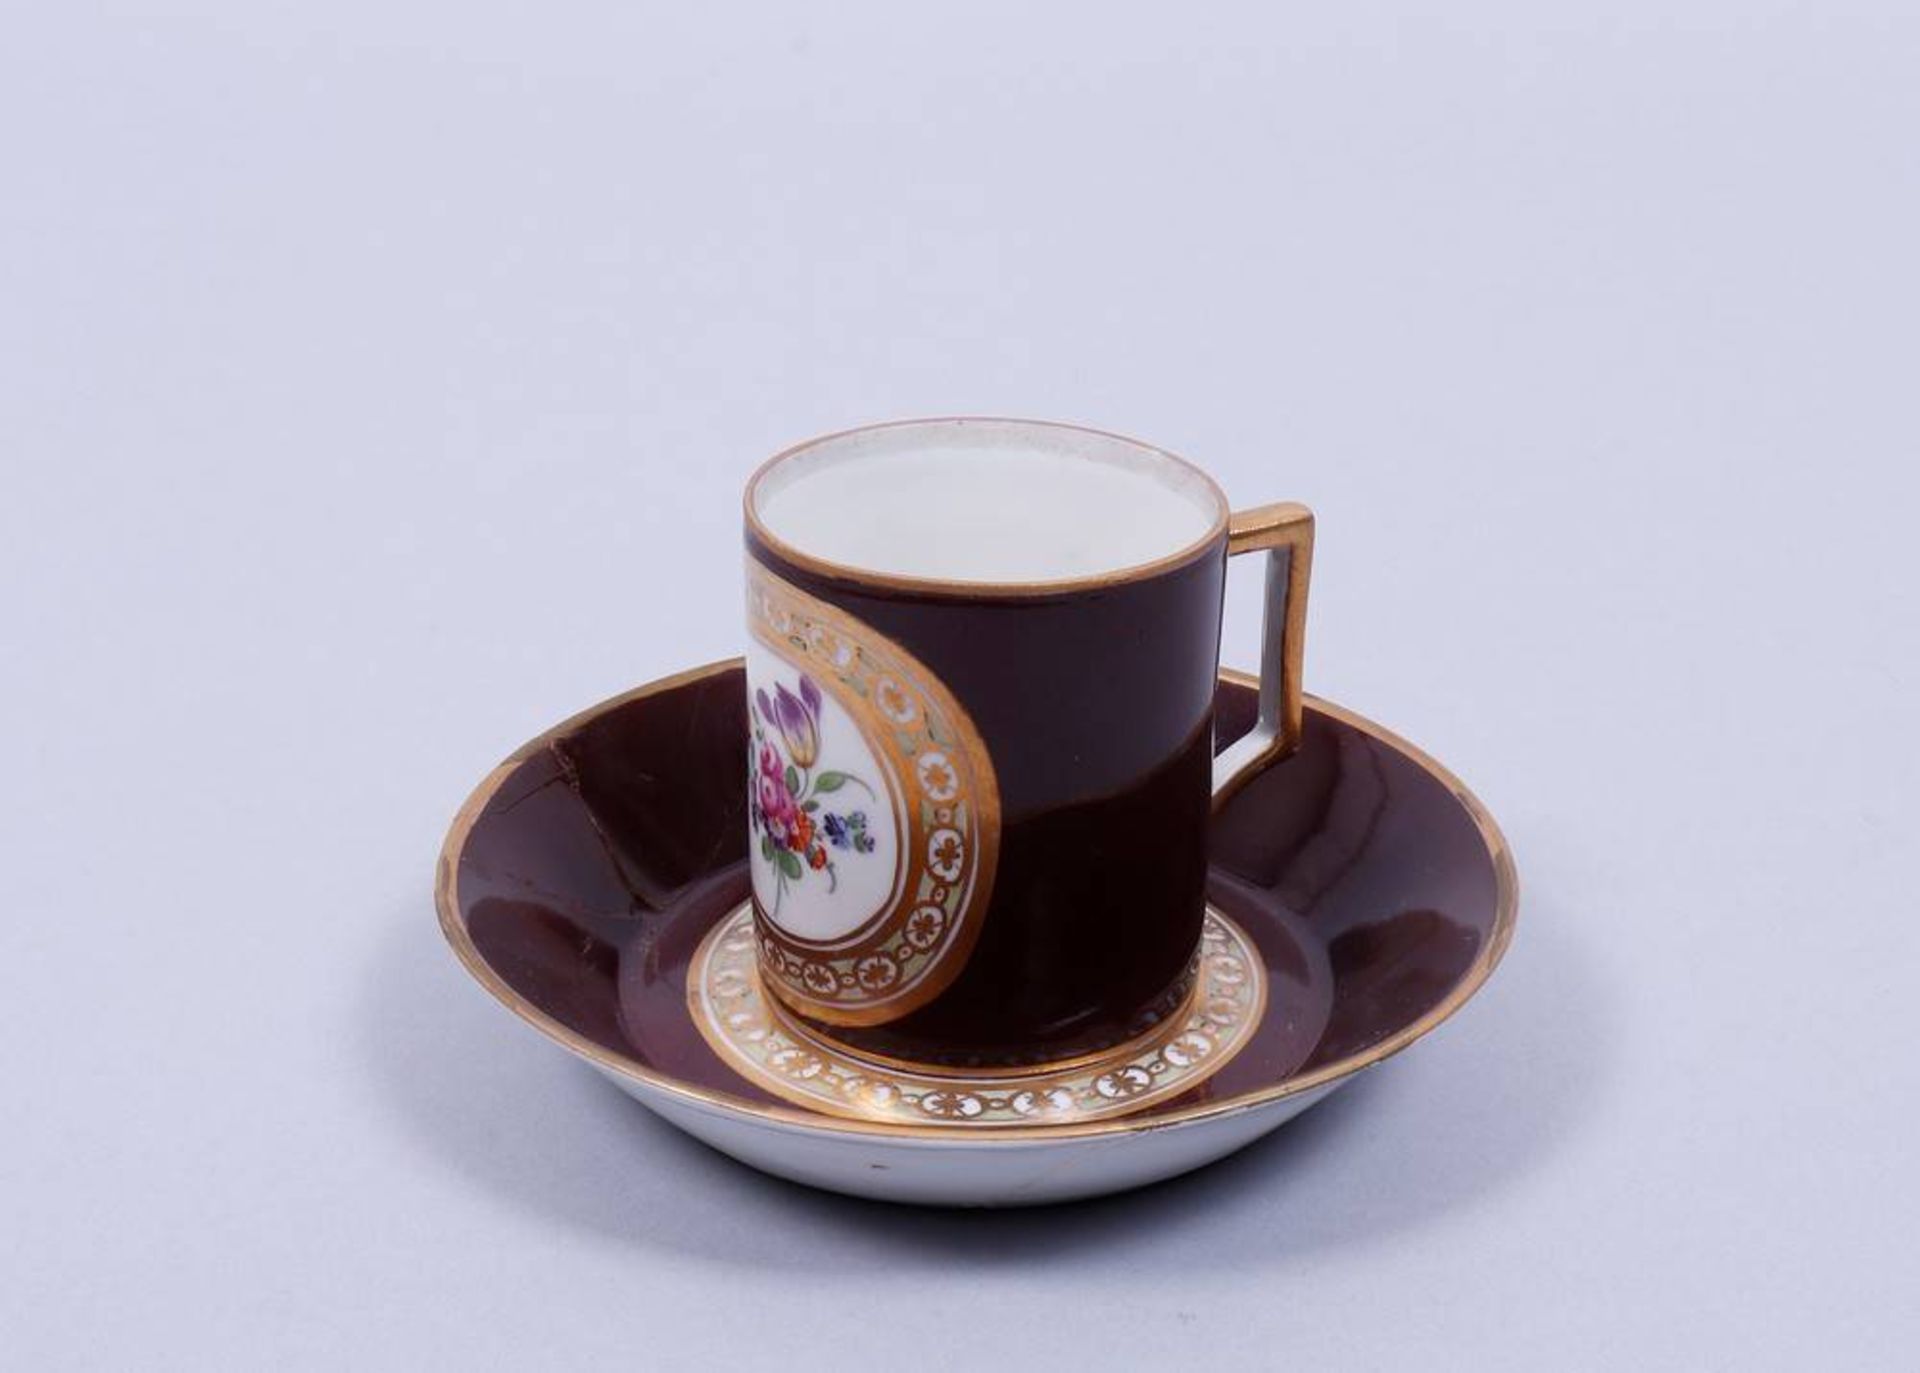 Kl. Empire-Kaffeetasse, Kaiserliche Porzellanmanufaktur St. Petersburg, 1762-96 - Bild 2 aus 3